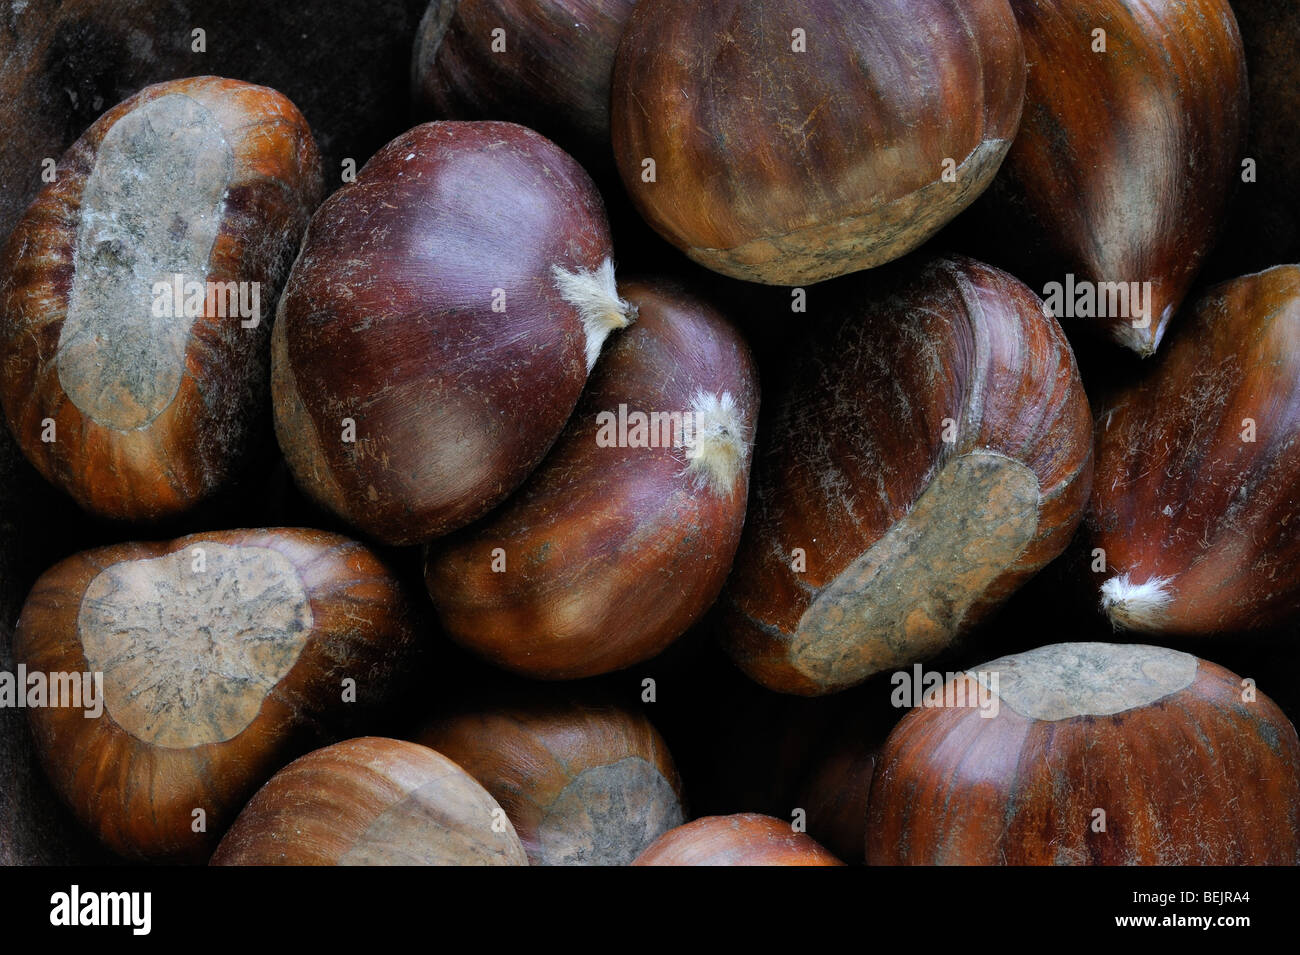 Sweet chestnut nuts / marron (Castanea sativa) harvested in autumn Stock Photo